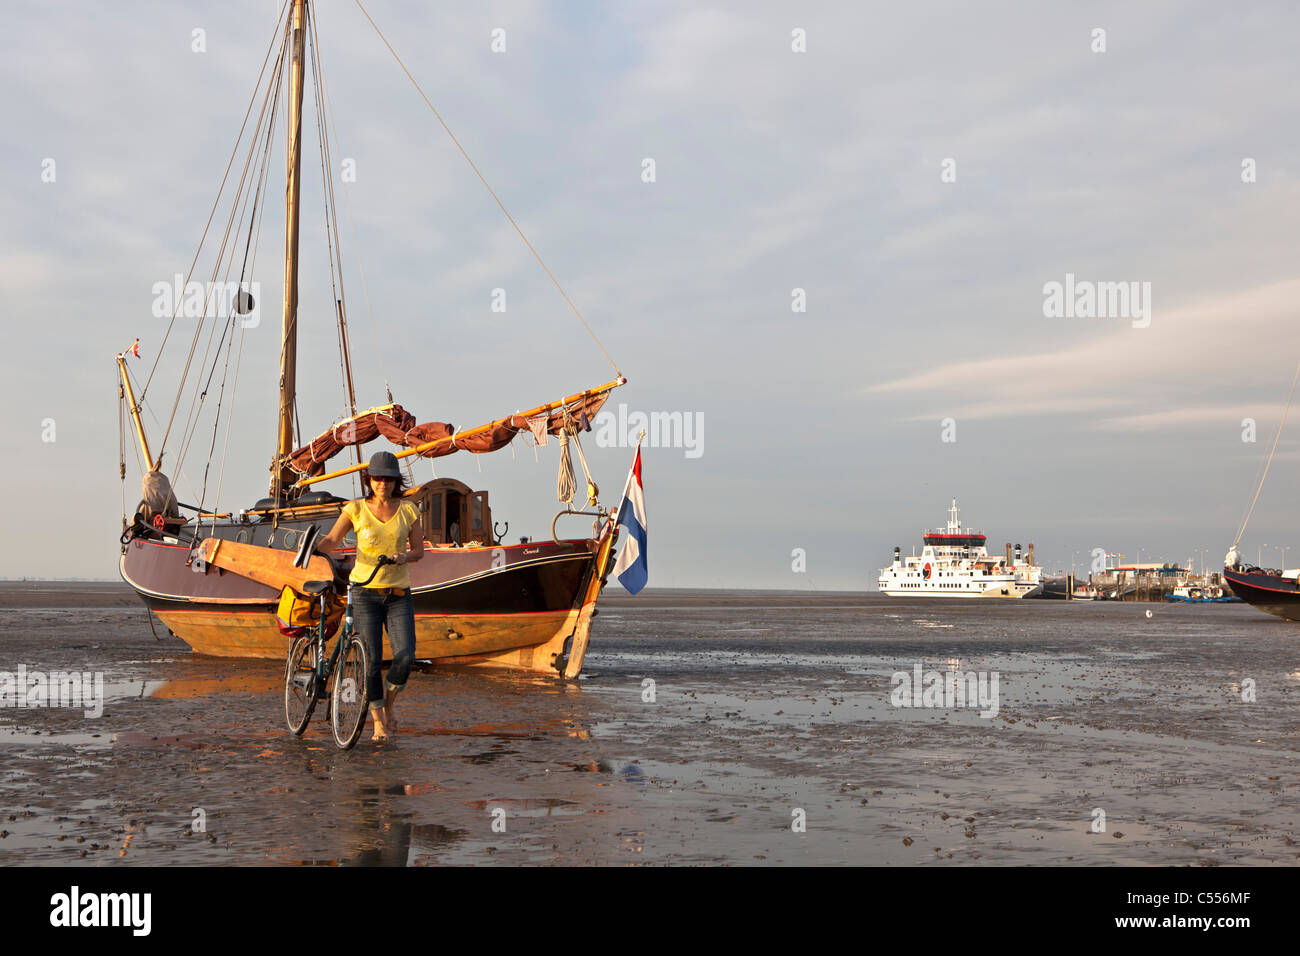 Nes Ameland, isola, mare di Wadden Islands. Imbarcazione a vela sulla piana di fango nel porto. Donna e bicicletta. Traghetto per la terraferma. Foto Stock